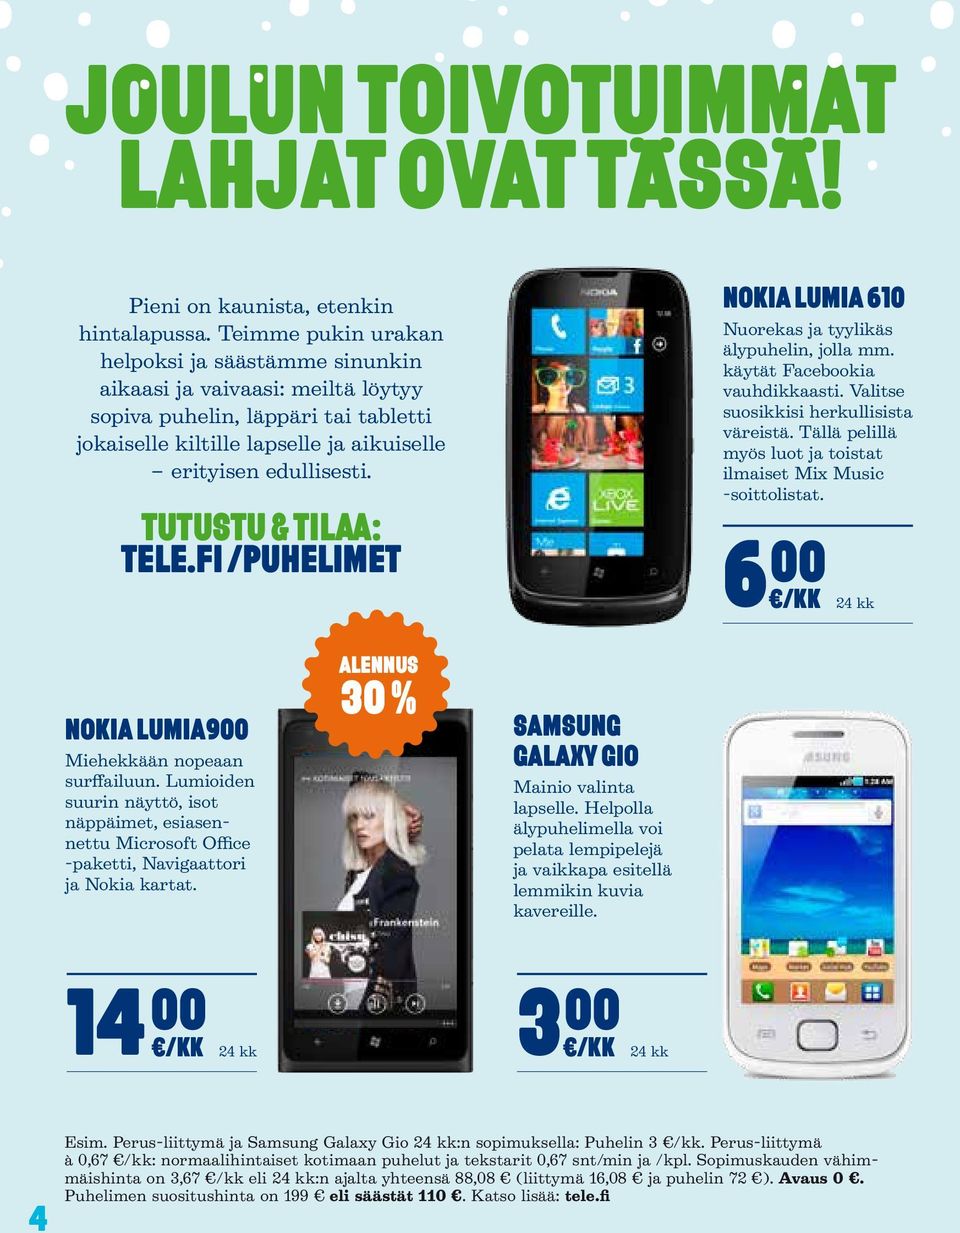 TUTUSTU & TILAA: tele.fi /puhelimet NOKIA LUMIA 610 Nuorekas ja tyylikäs älypuhelin, jolla mm. käytät Facebookia vauhdikkaasti. Valitse suosikkisi herkullisista väreistä.